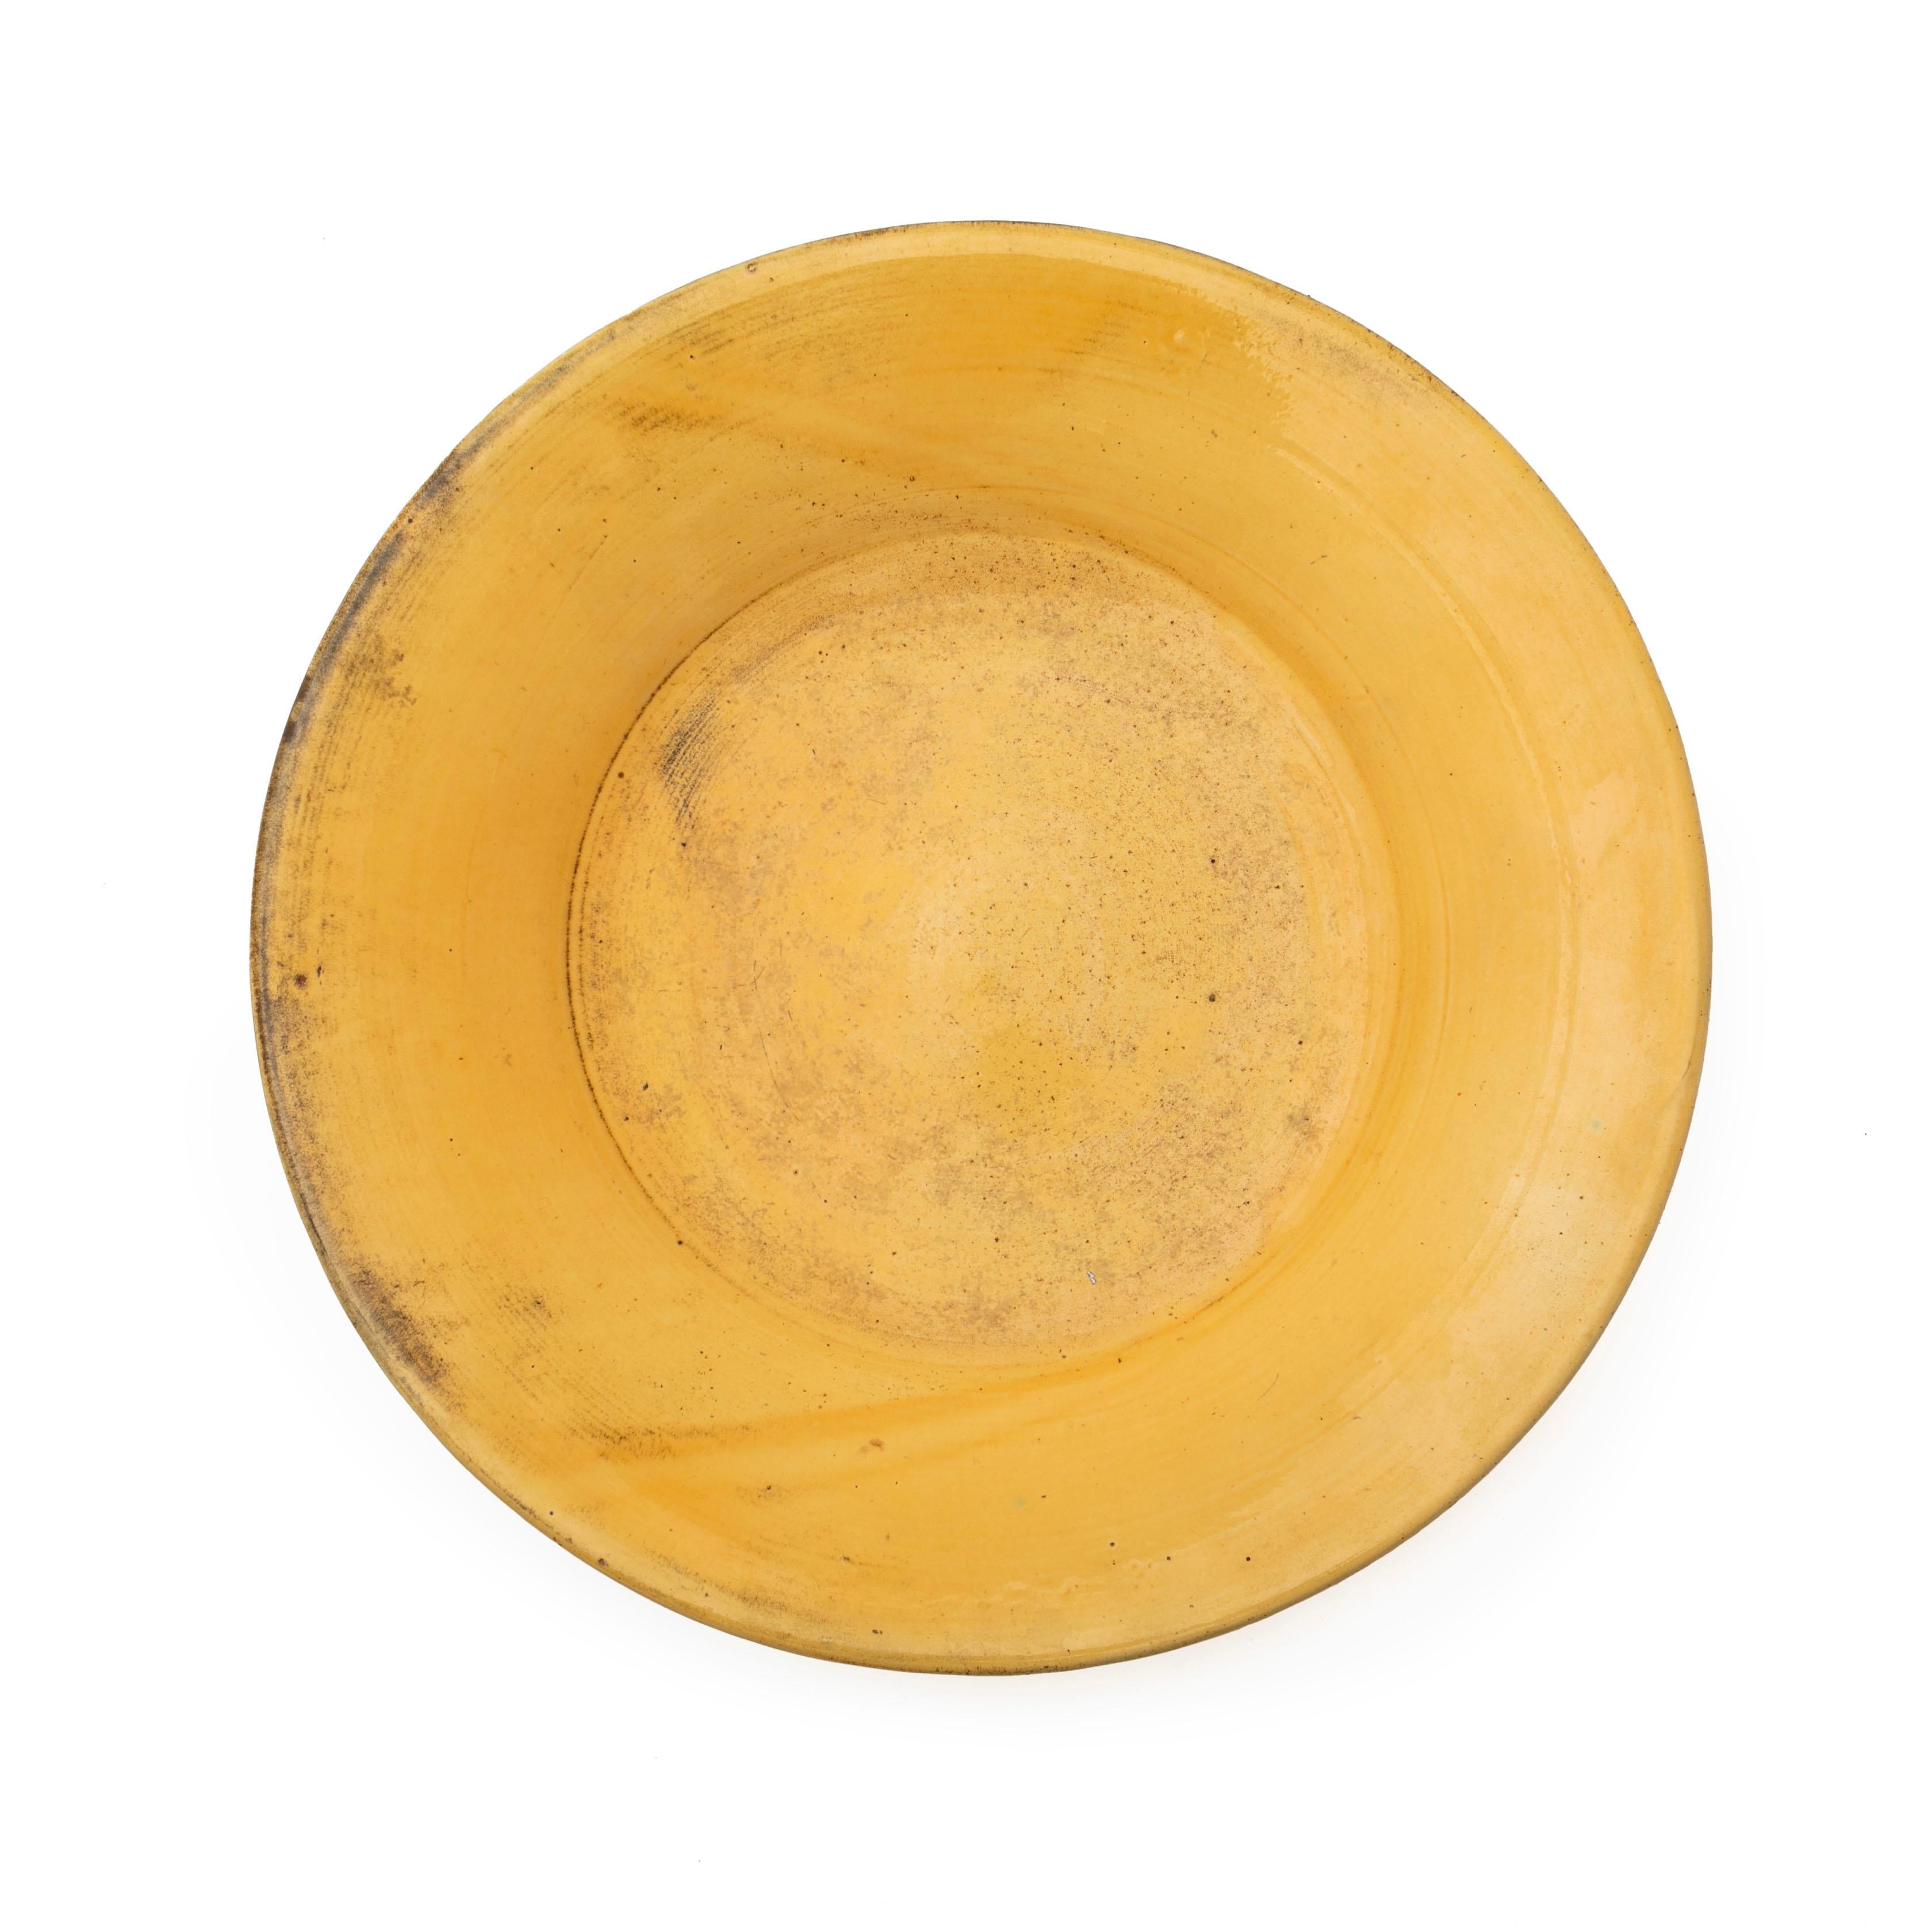 Große Schale aus glasiertem Steingut.
Schöne gelbe Uranglasur. 
Maße: 40,5 x 7 cm. 

Gezeichnet HAK.

Dänemark 1920-1930er Jahre